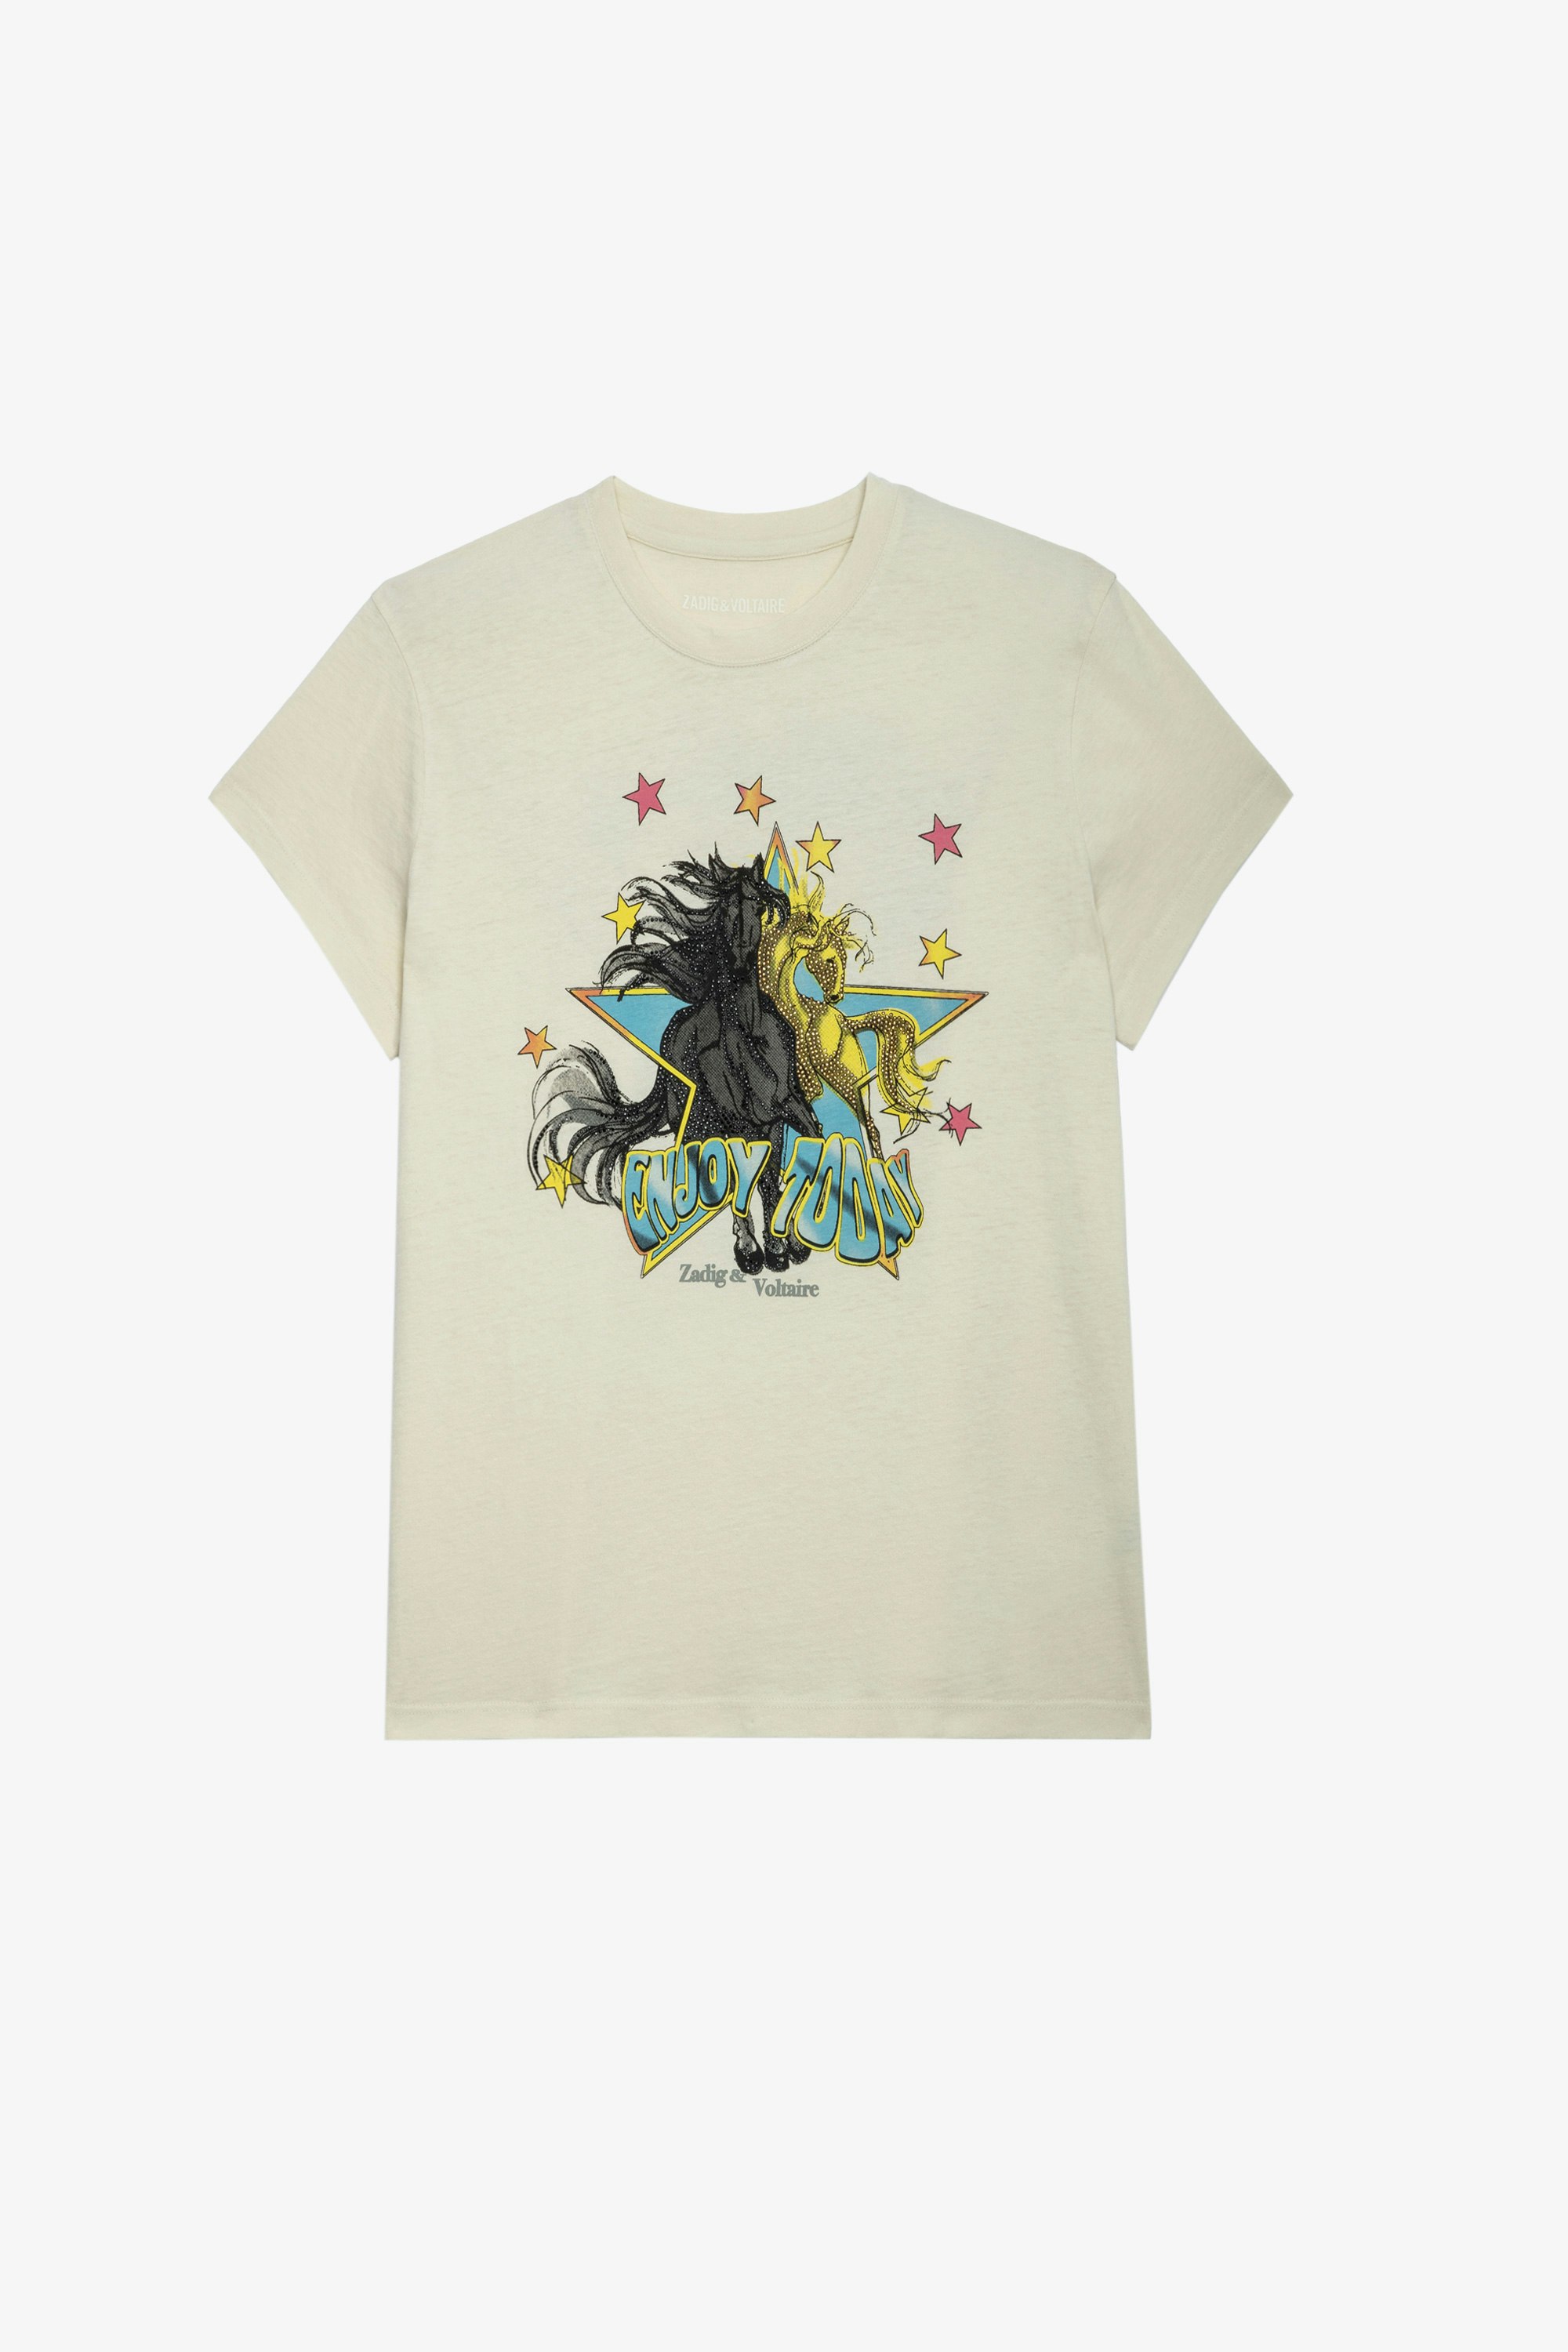 T-Shirt Zoe Horse Damen-T-Shirt aus ecrufarbener Baumwolle mit dem Aufdruck „Enjoy today“ und Pferd 